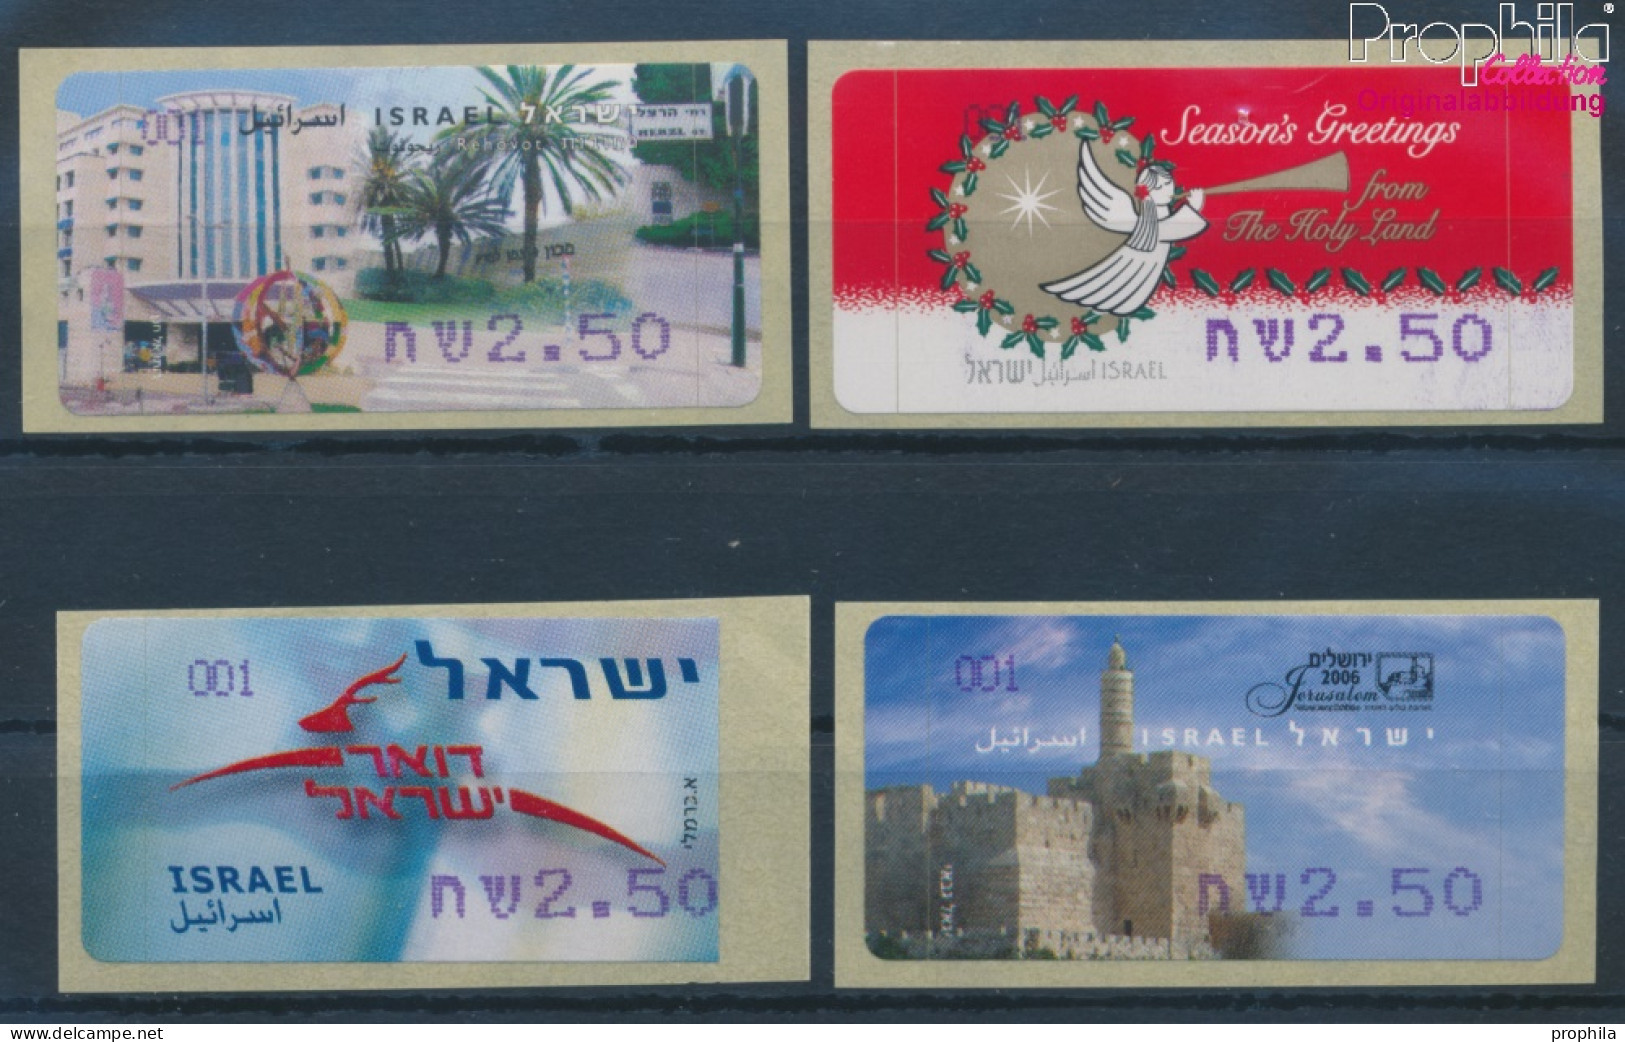 Israel ATM51f-ATM54 Postfrisch 2006 Automatenmarken (10369163 - Automatenmarken (Frama)